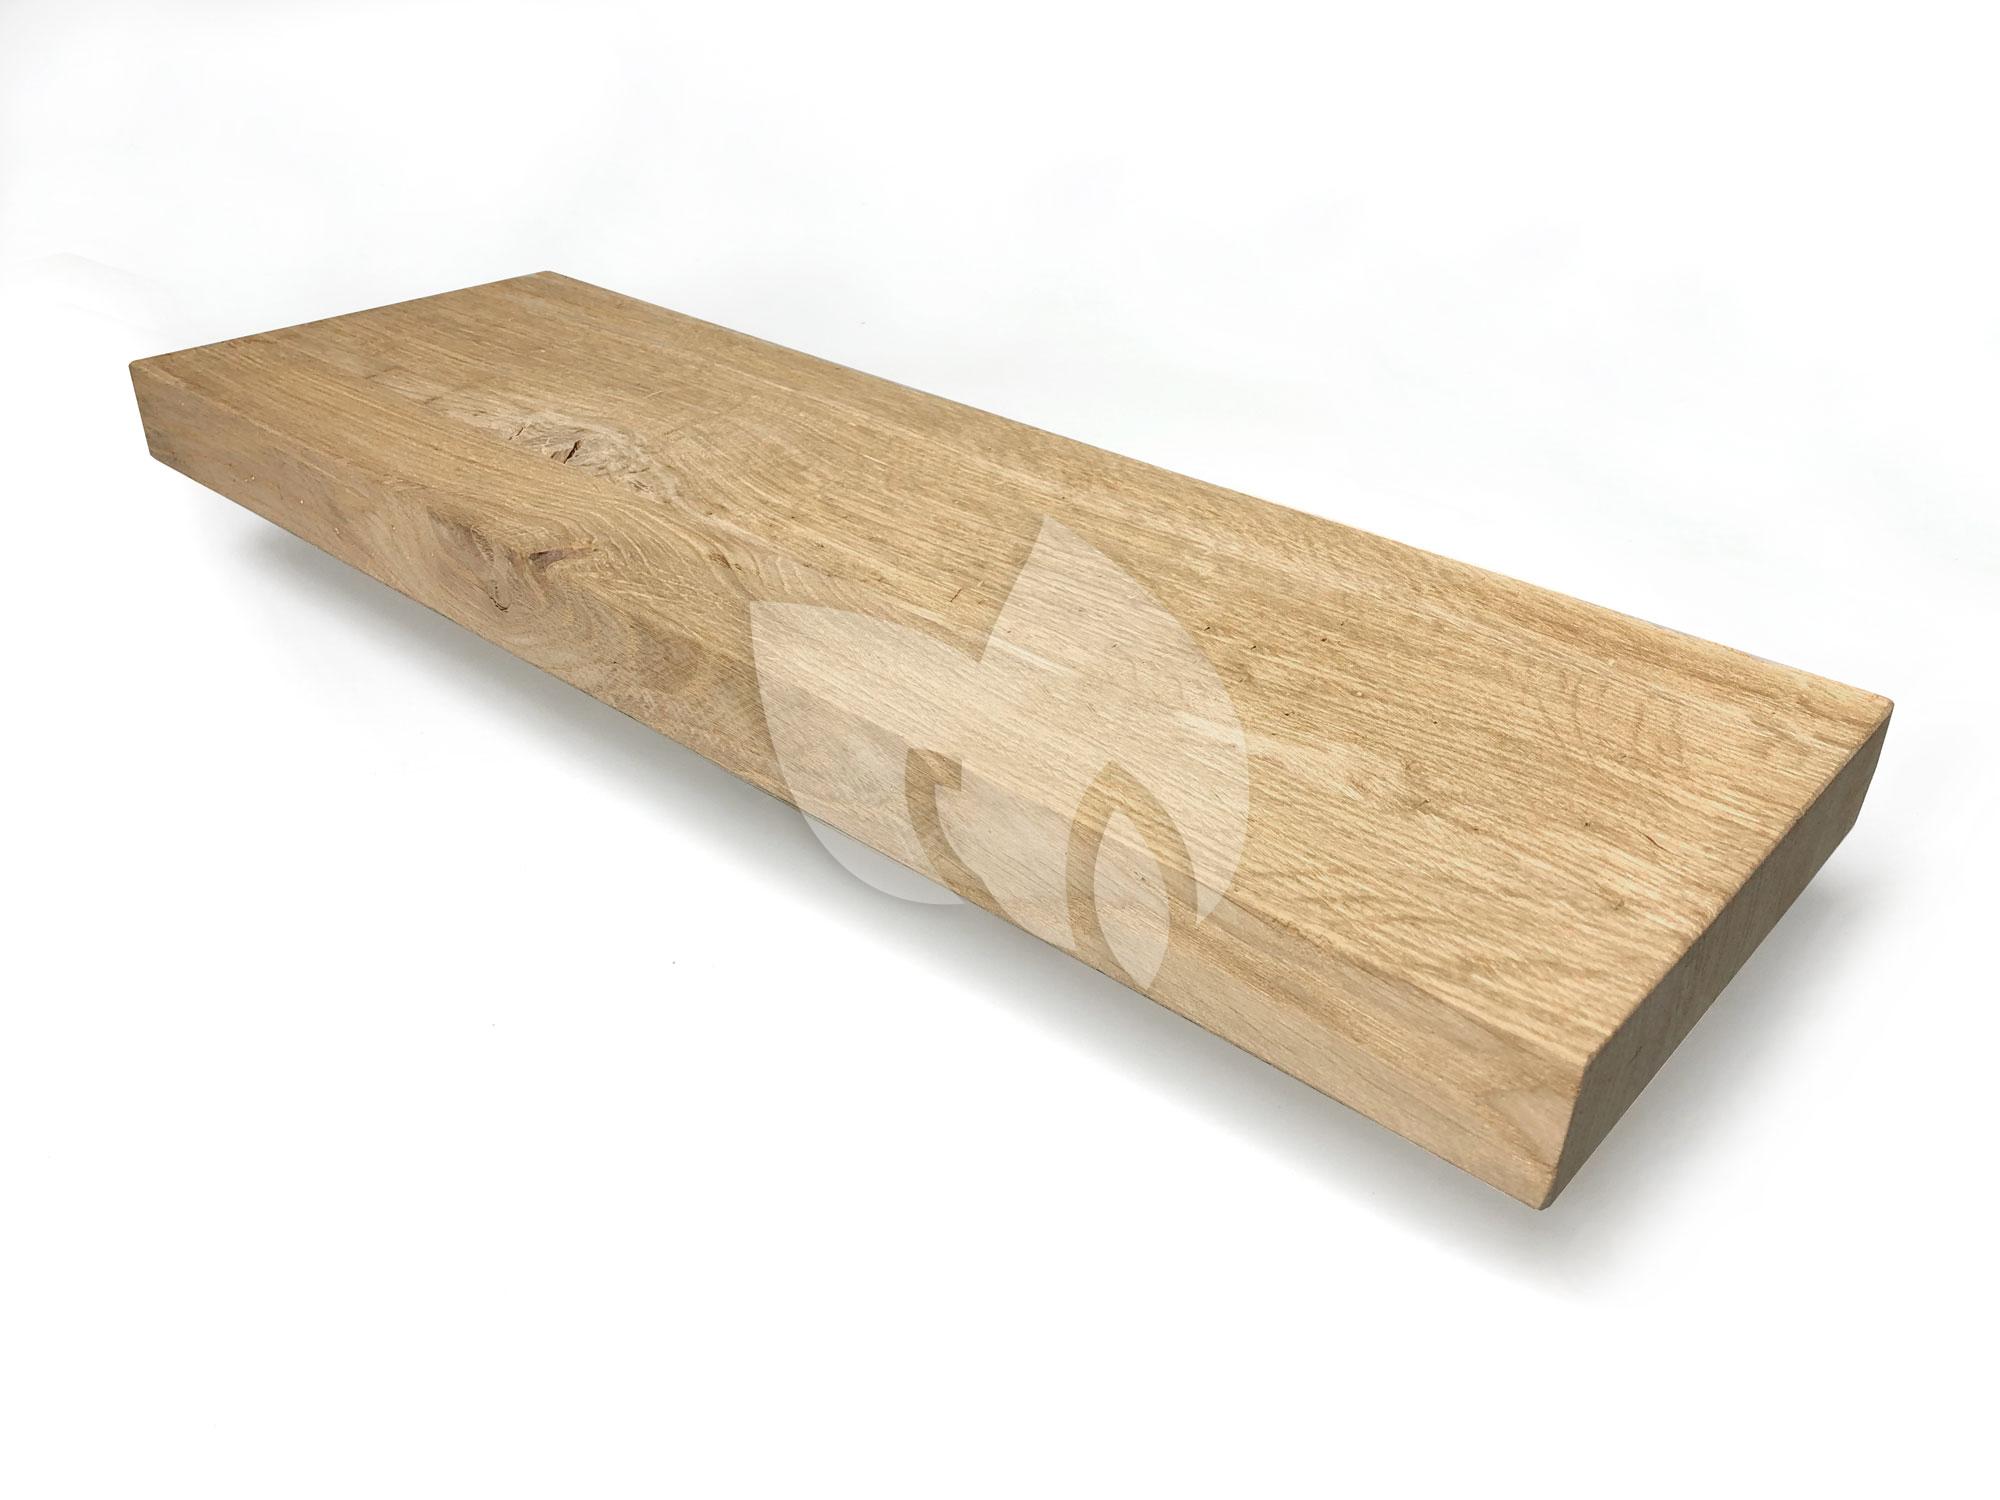 waarom niet ondernemen forum Wood Brothers Oud eiken plank massief recht 100 x 30 cm | Tuinexpress.nl